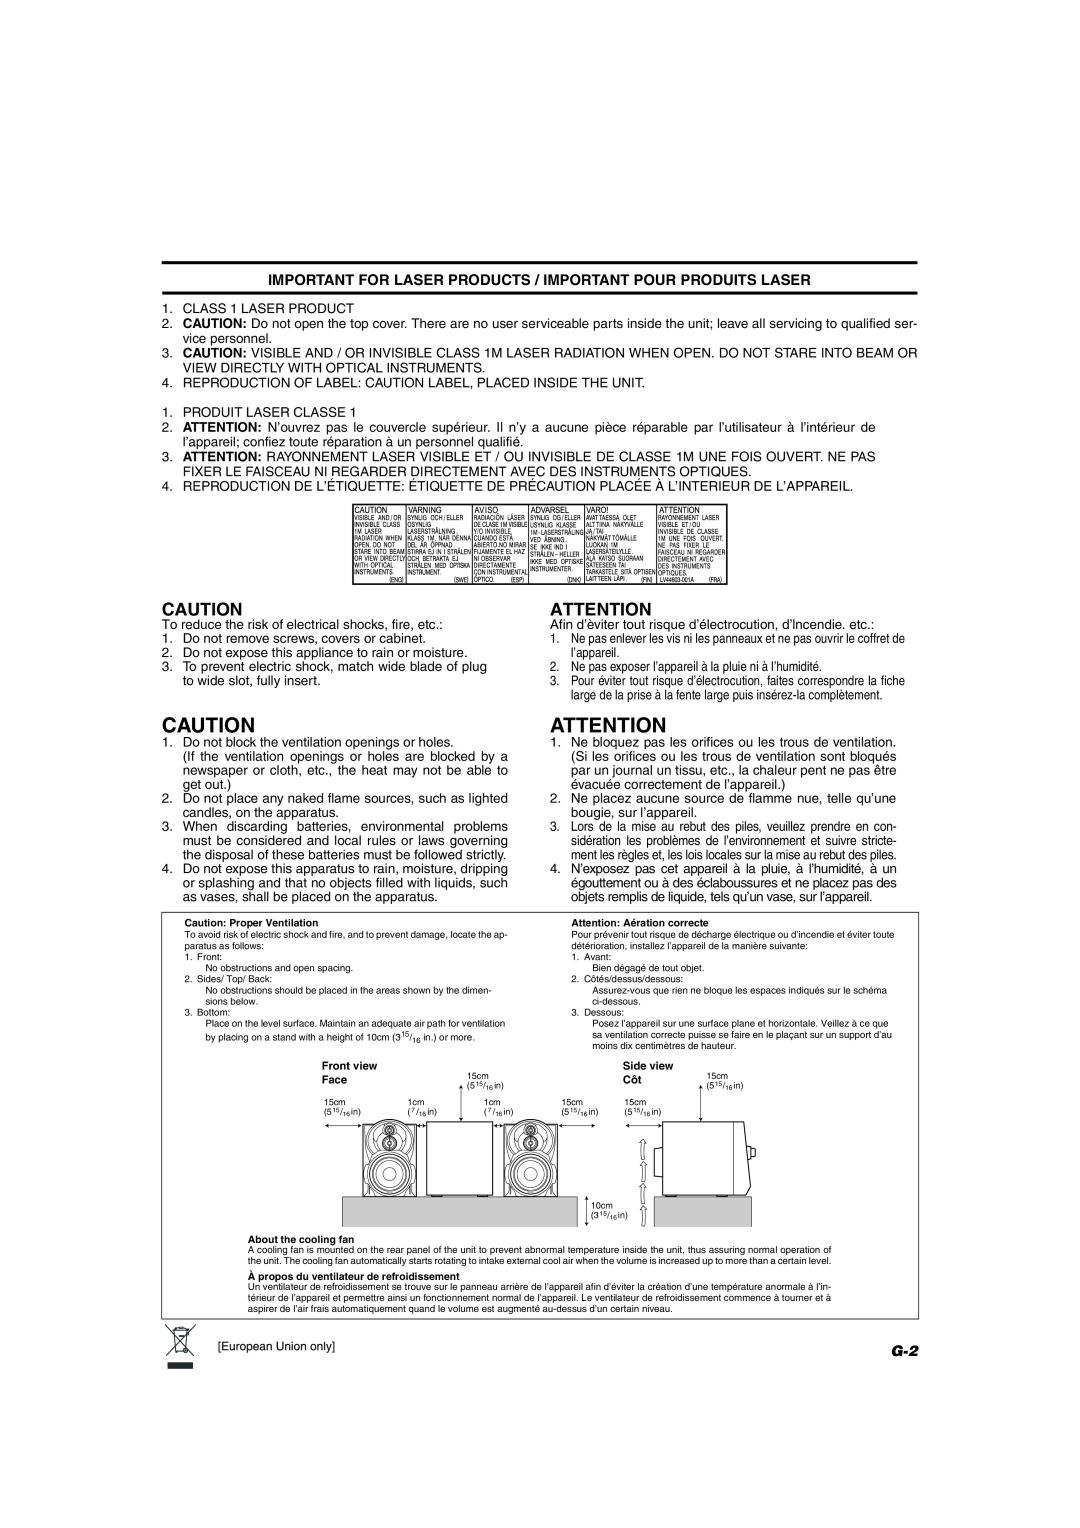 JVC MX-KC45 manual 